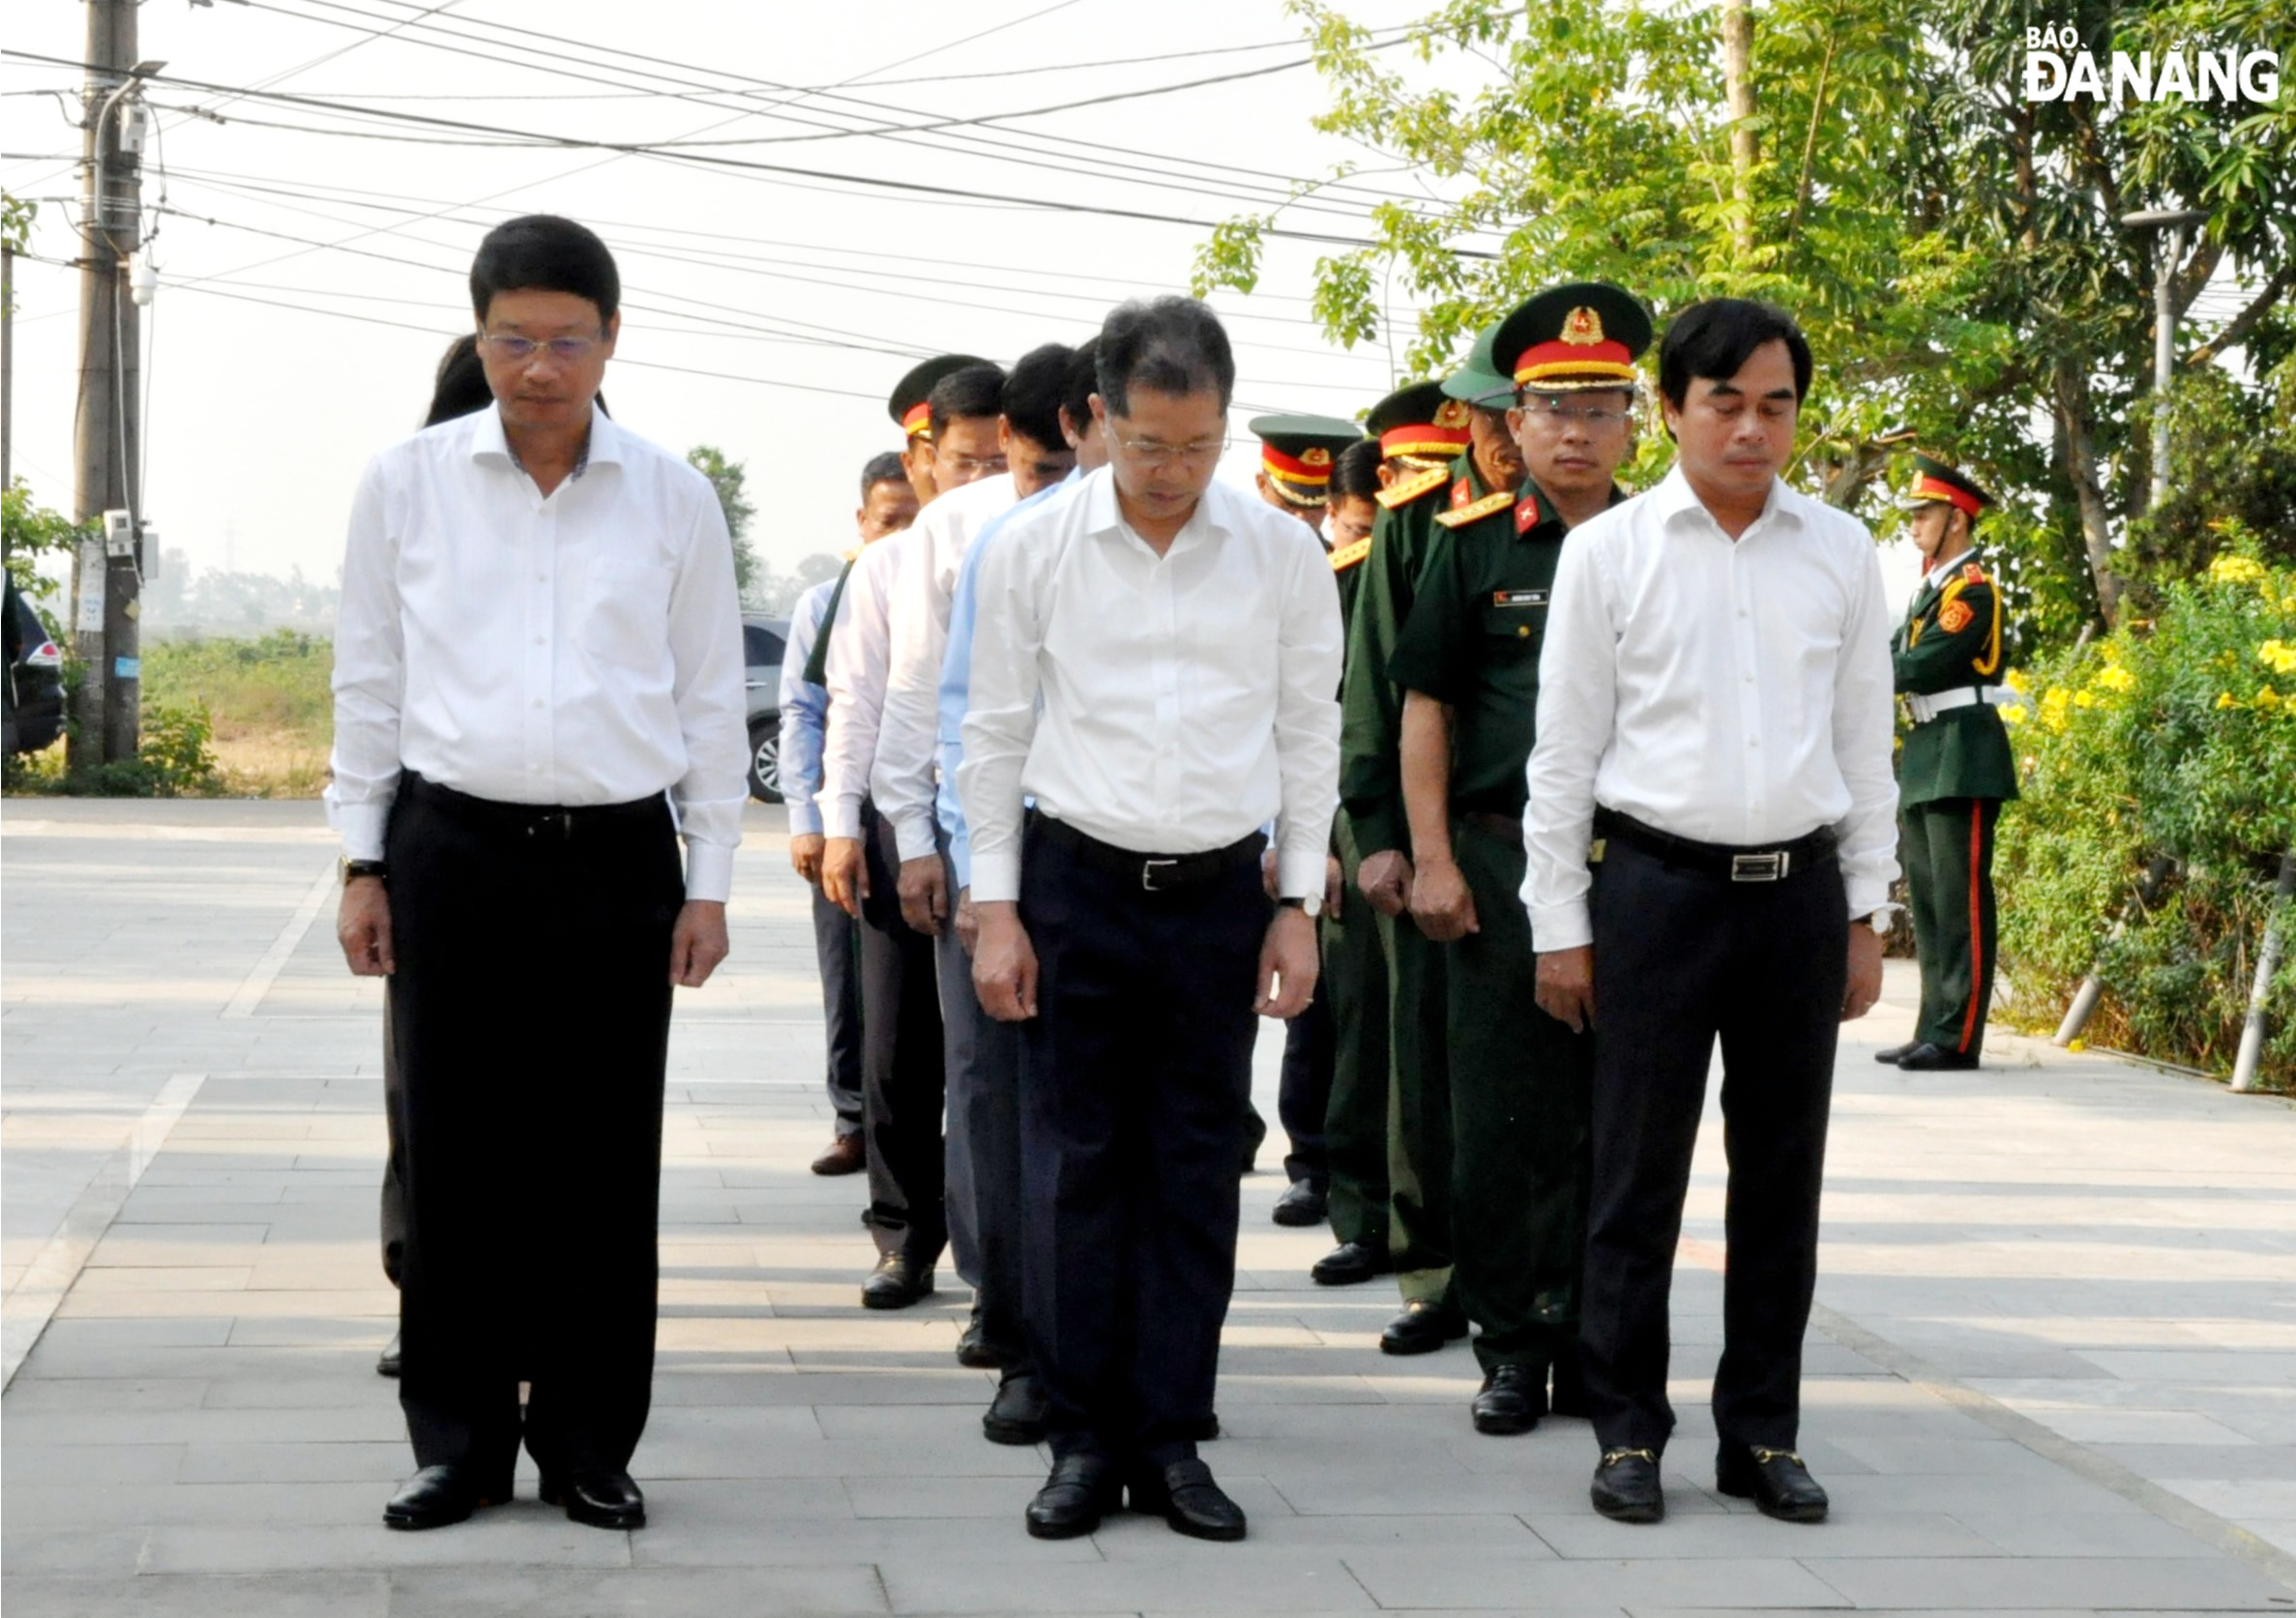 Đoàn lãnh đạo thành phố thành kính dành phút mặc niệm tưởng nhớ công lao to lớn của Chủ tịch Hồ Chí Minh vĩ đại; tưởng nhớ các anh hùng, liệt sĩ. Ảnh: LÊ HÙNG